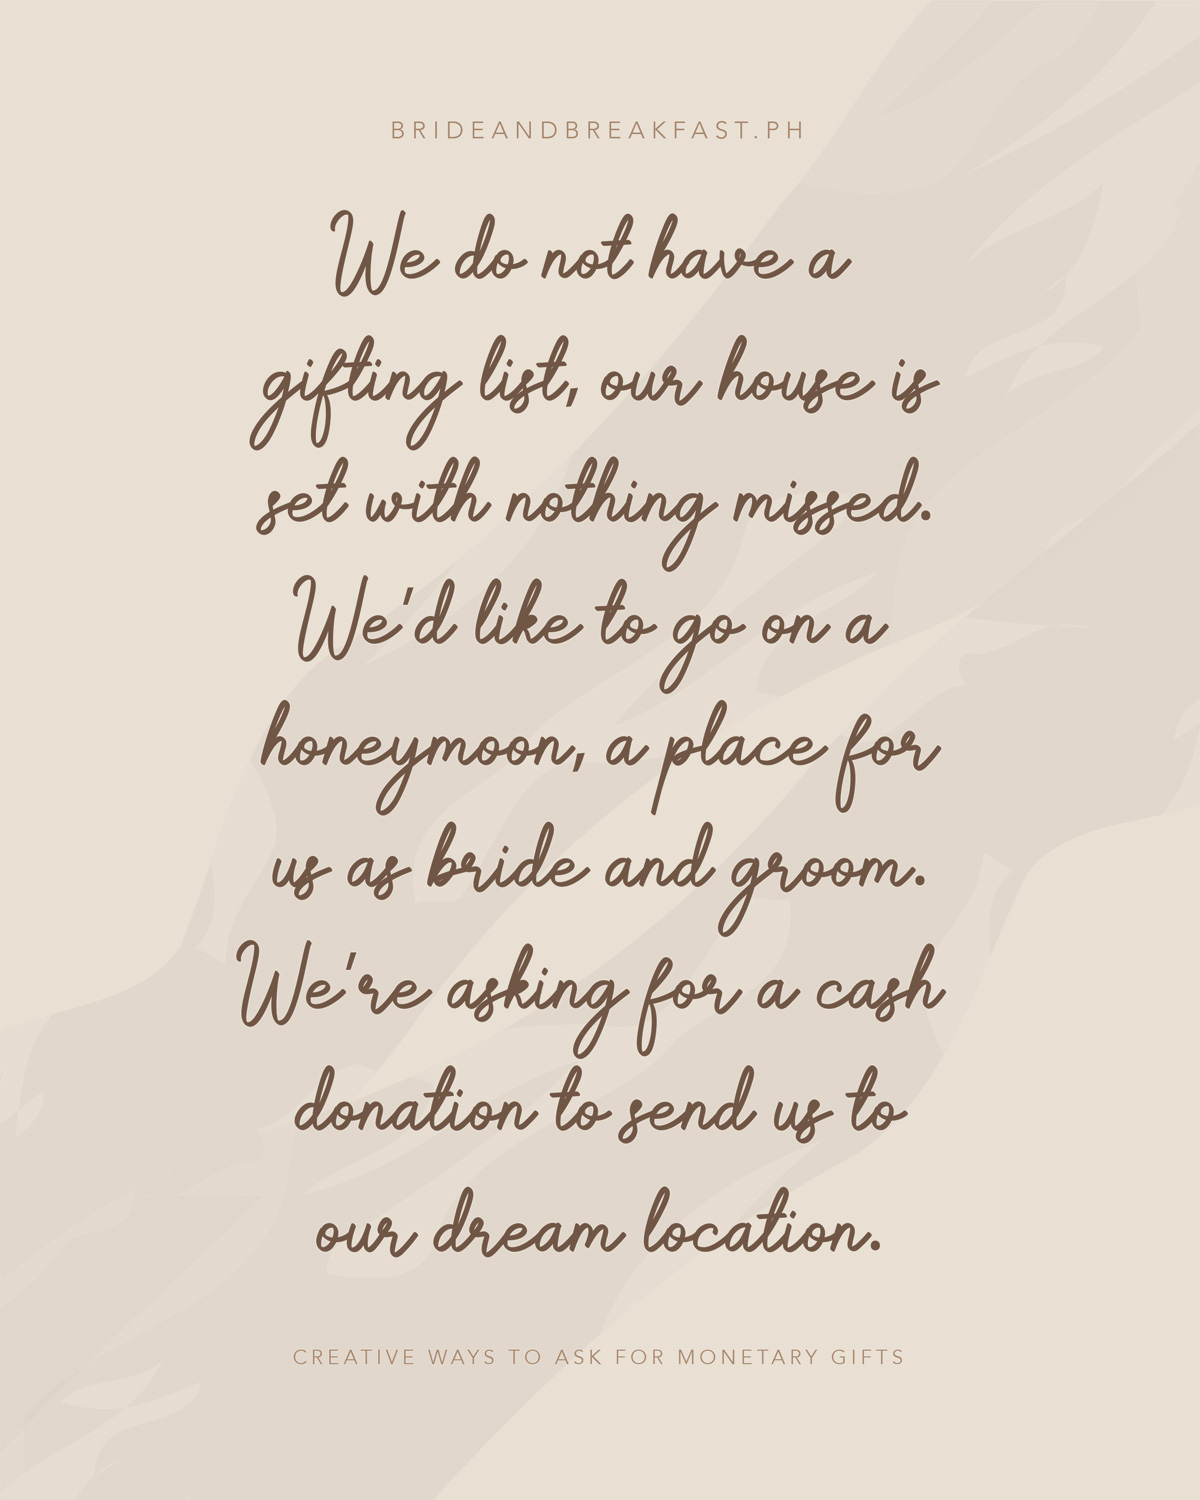 vi har ikke en gaveliste, vores hus er indstillet med intet savnet. Vi vil gerne gå på bryllupsrejse et sted for os som brud og brudgom. Vi beder om en kontant donation for at sende os til vores drømmested.